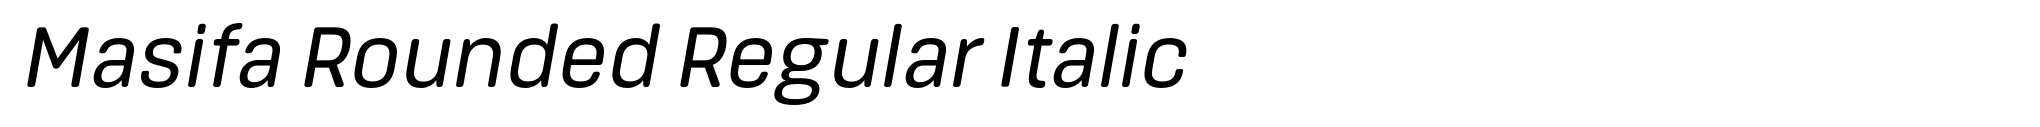 Masifa Rounded Regular Italic image